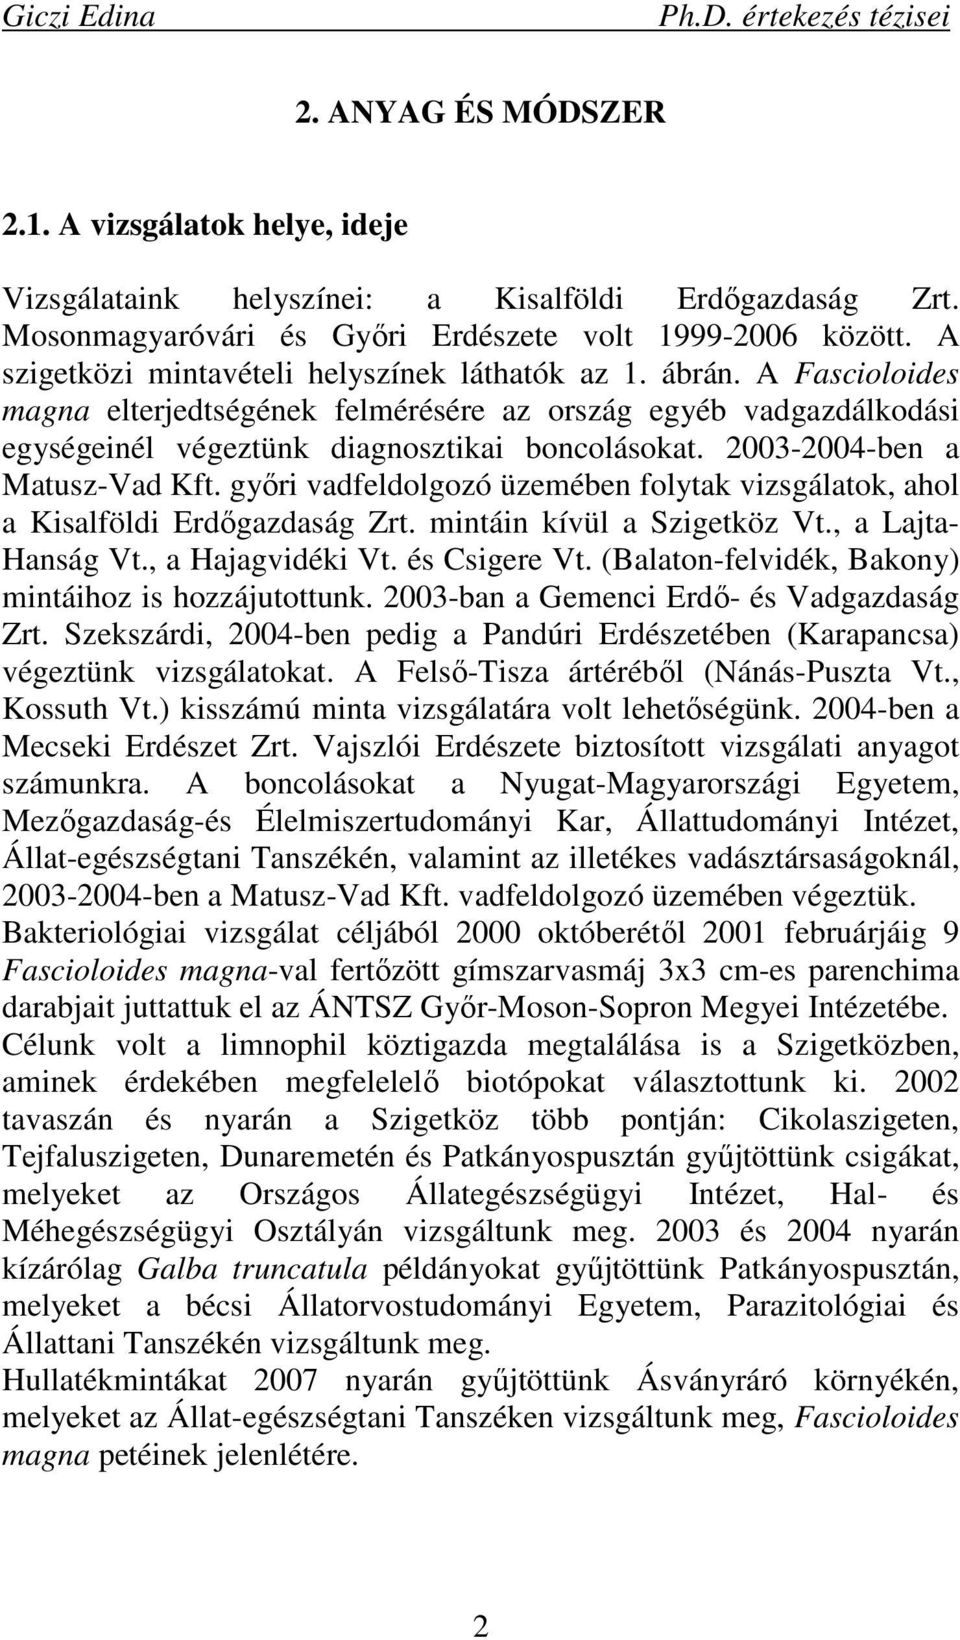 2003-2004-ben a Matusz-Vad Kft. gyıri vadfeldolgozó üzemében folytak vizsgálatok, ahol a Kisalföldi Erdıgazdaság Zrt. mintáin kívül a Szigetköz Vt., a Lajta- Hanság Vt., a Hajagvidéki Vt.